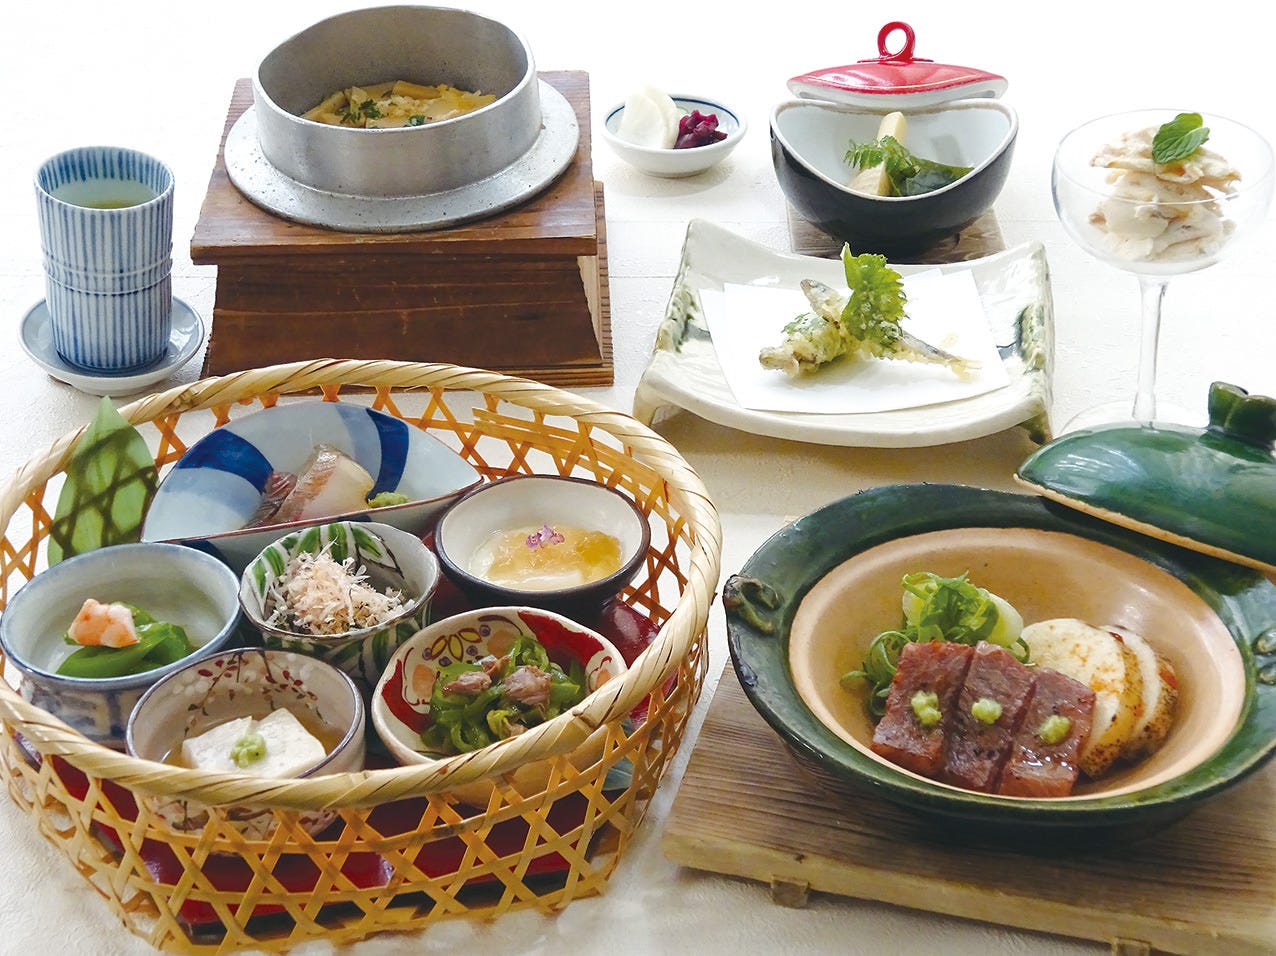 毎月新しい料理が楽しめてお得
『くずし京野菜料理コース』